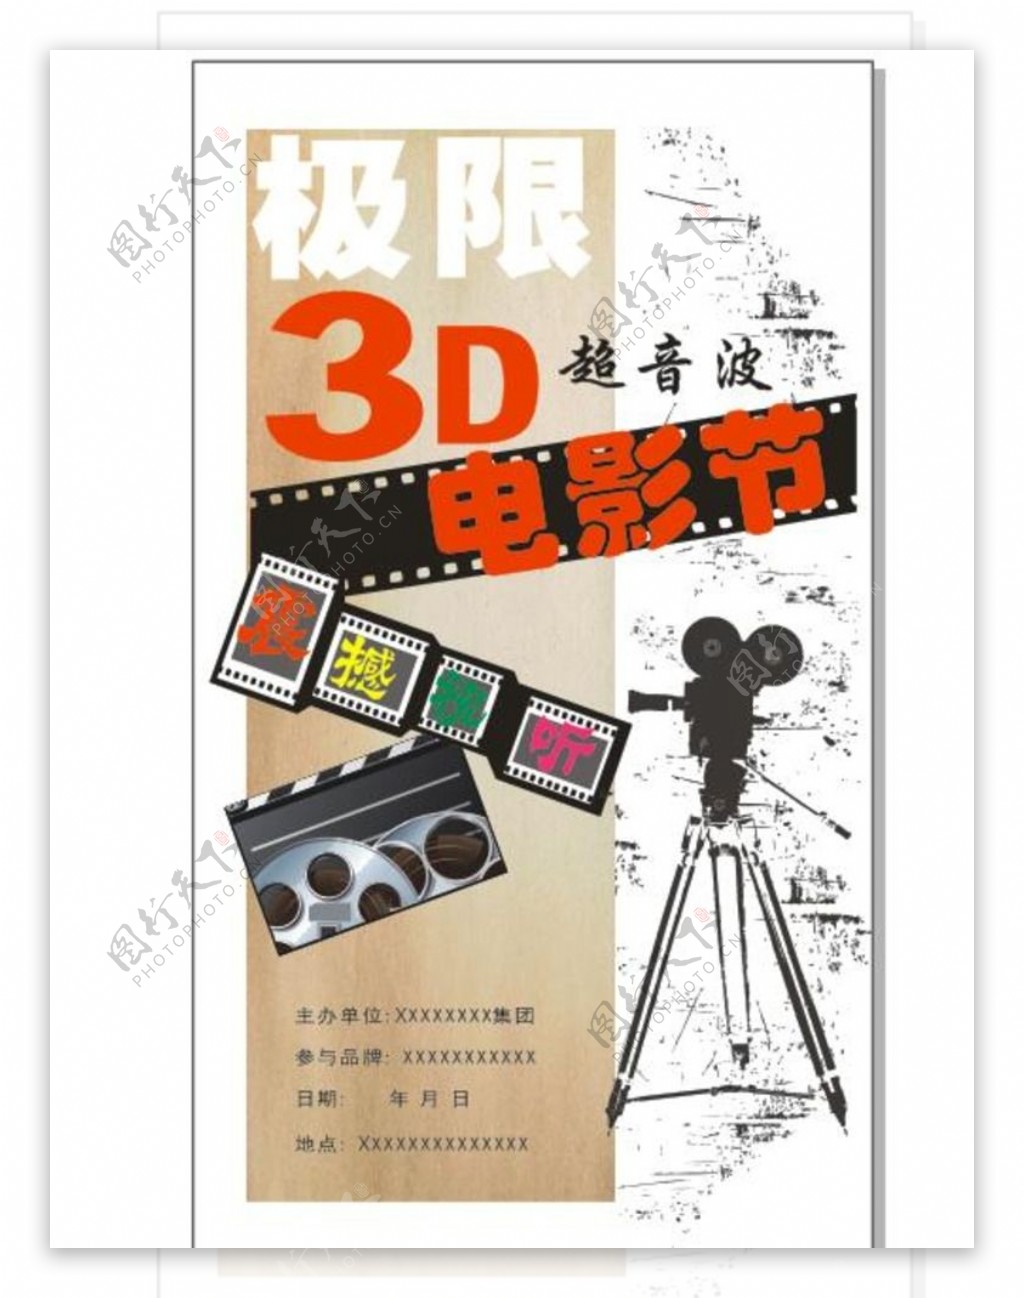 3D电影节海报